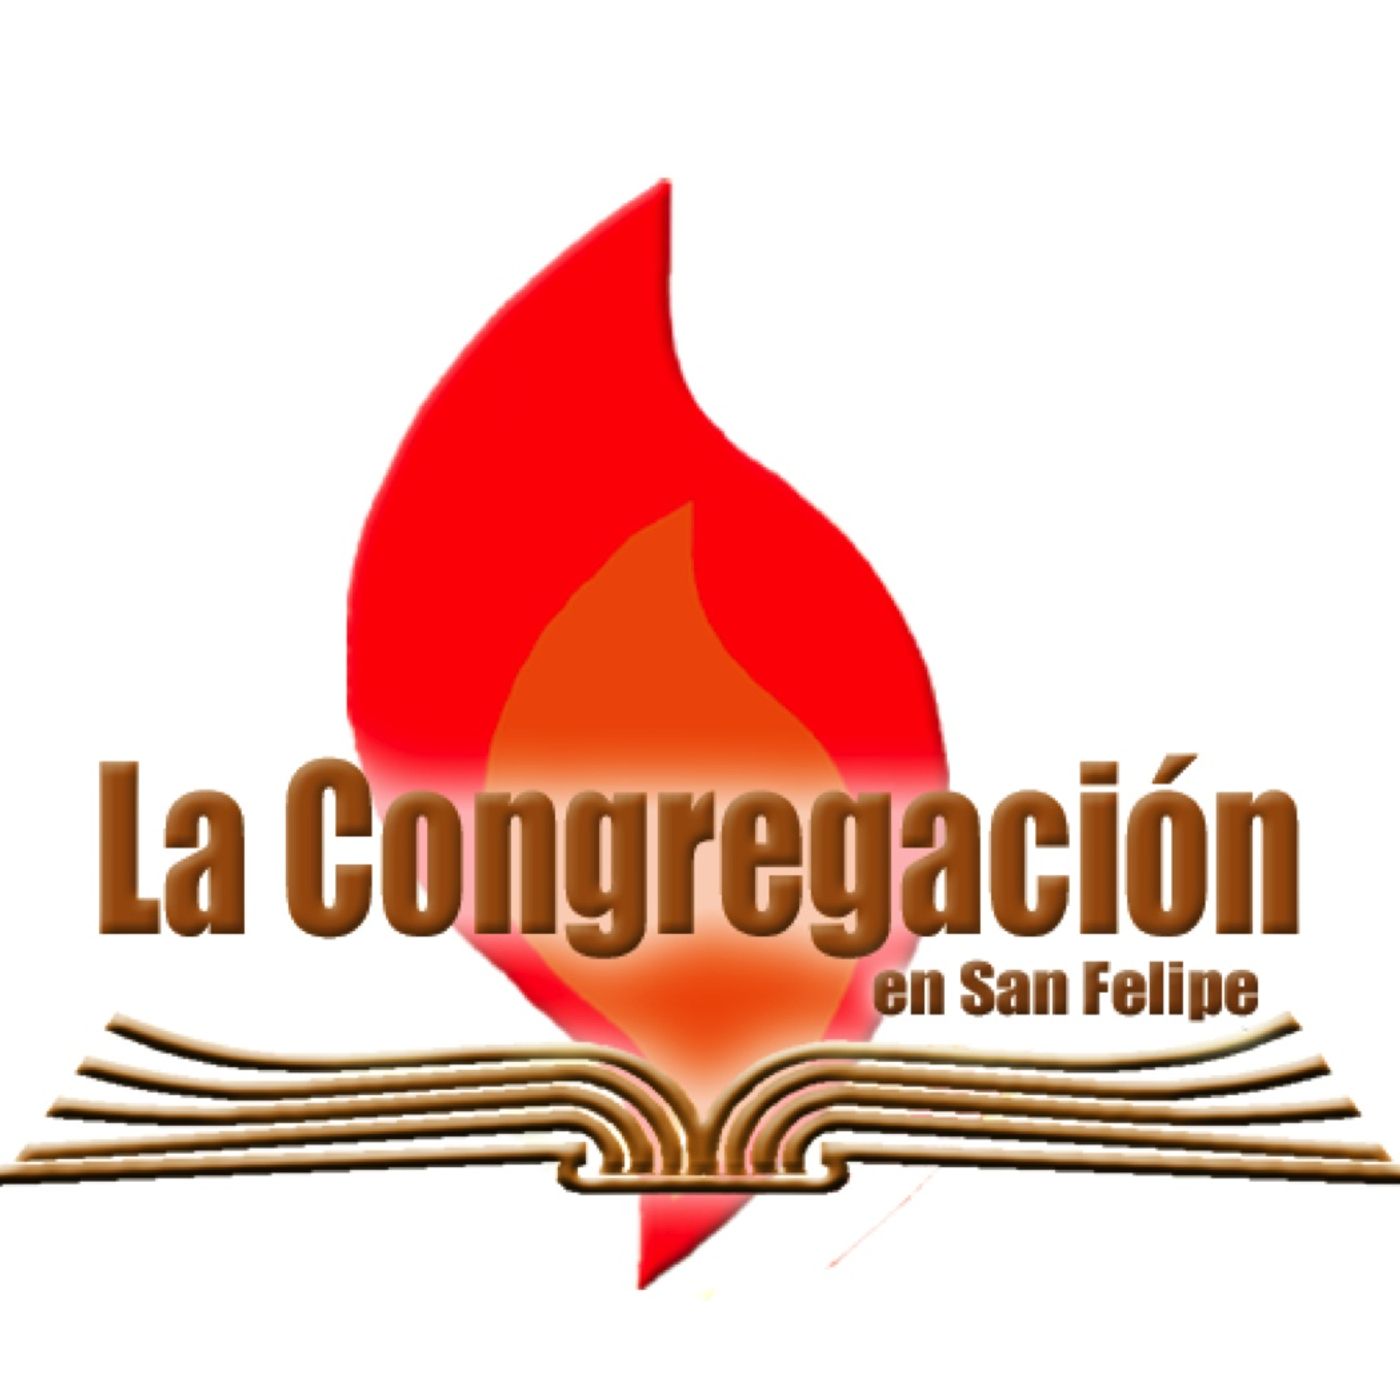 1 Congregación en San Felipe